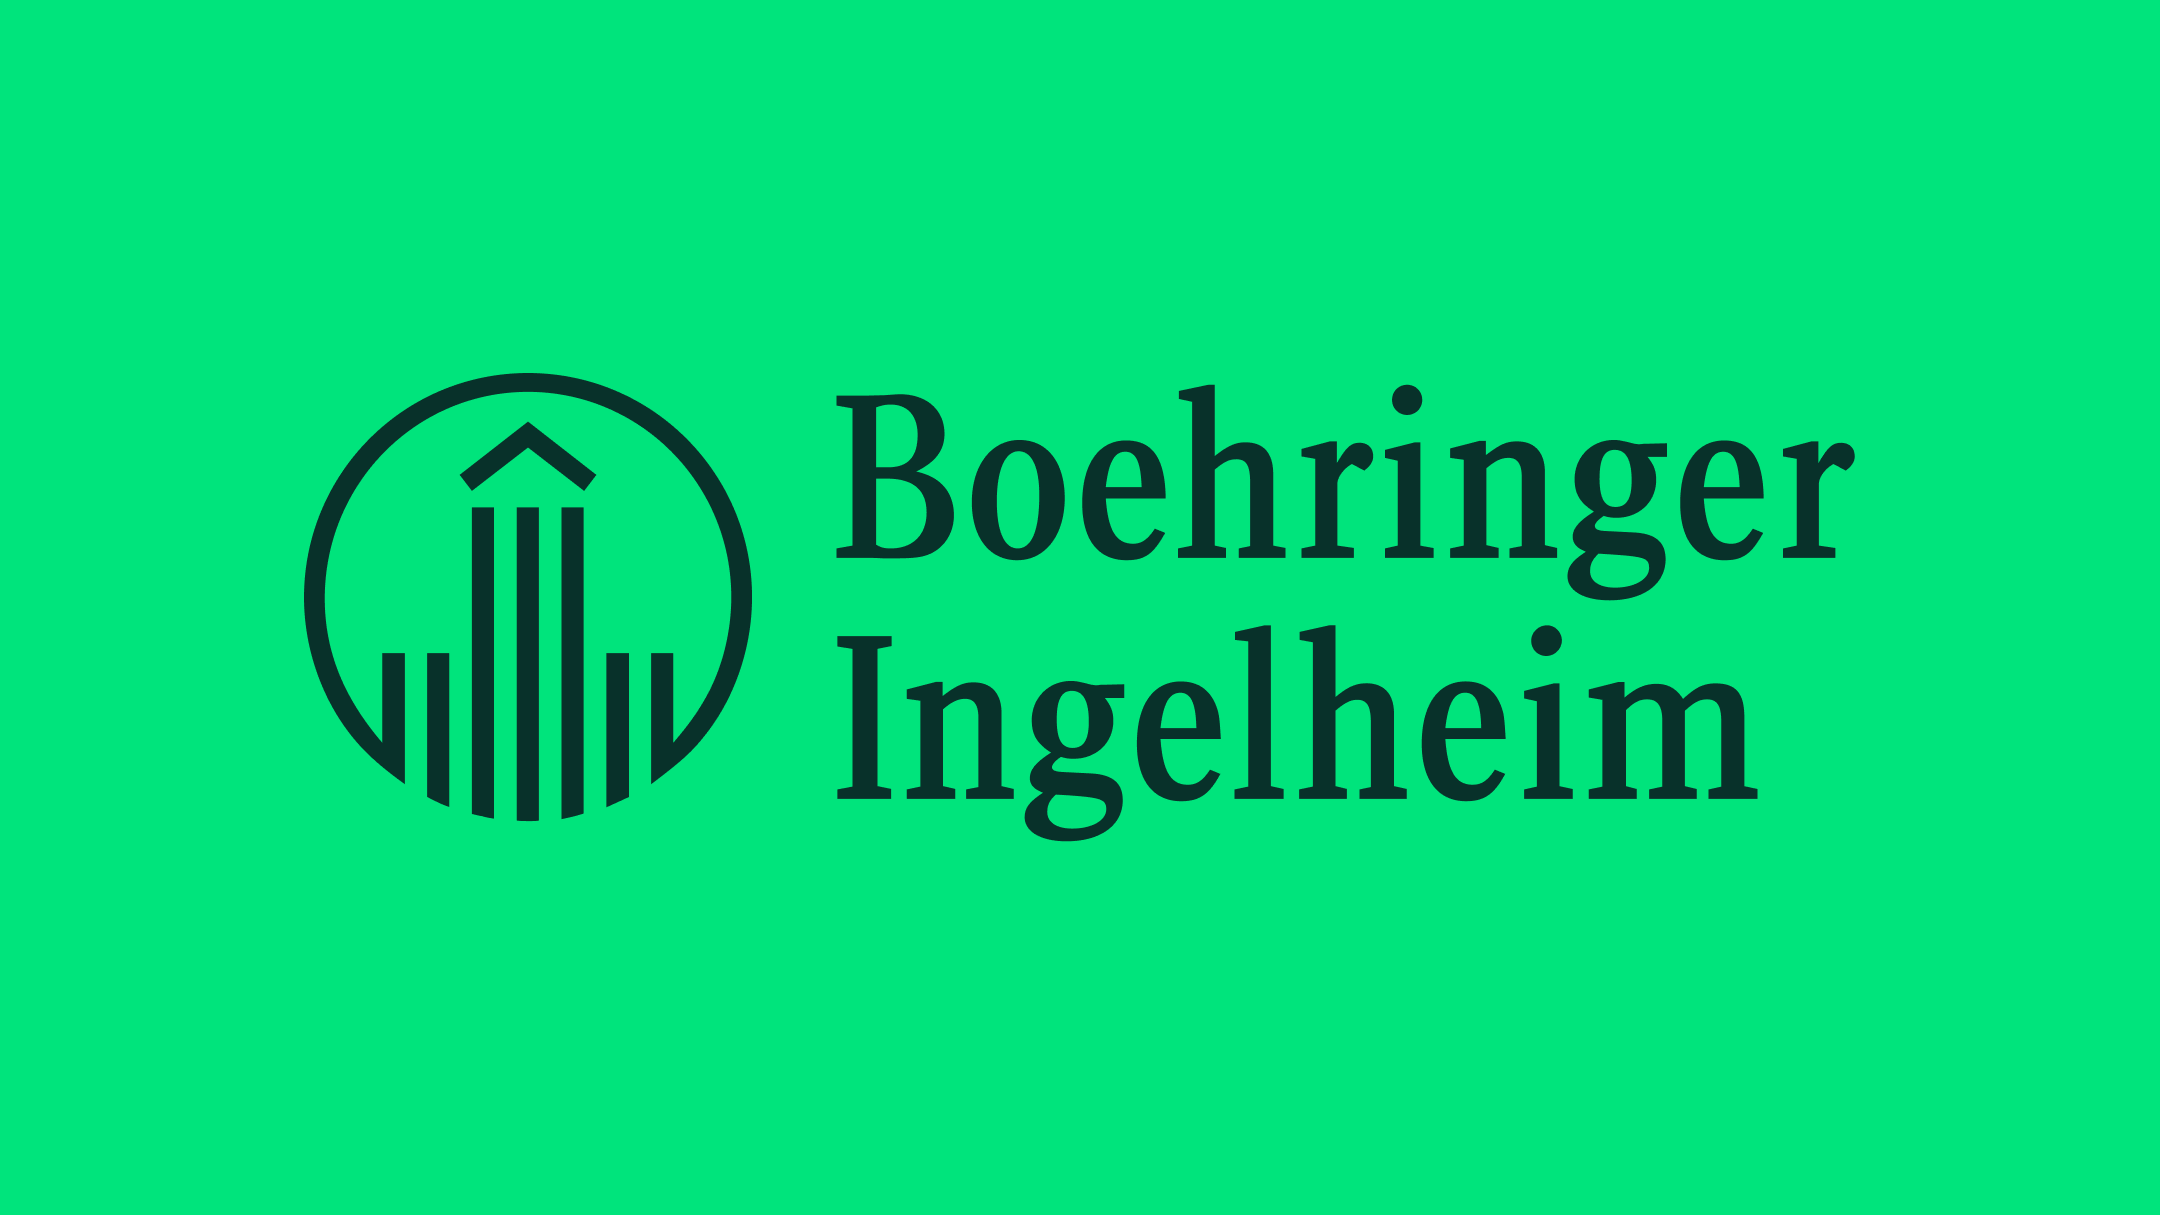 Boehringer Ingelheim Logo dark green logo on a accent green background 